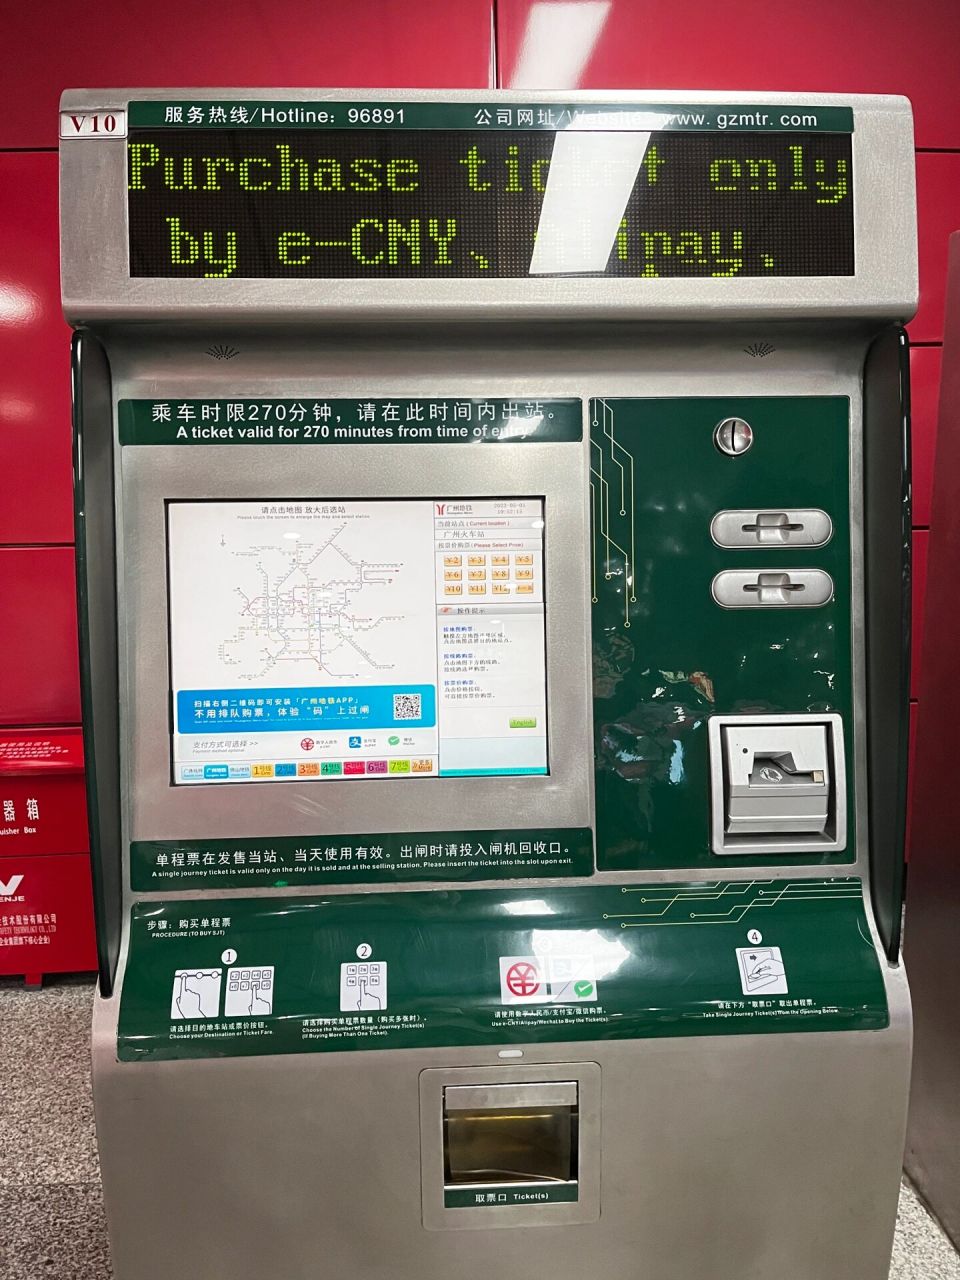 广州地铁最全购票攻略来了 废话不多说,直接上攻略!